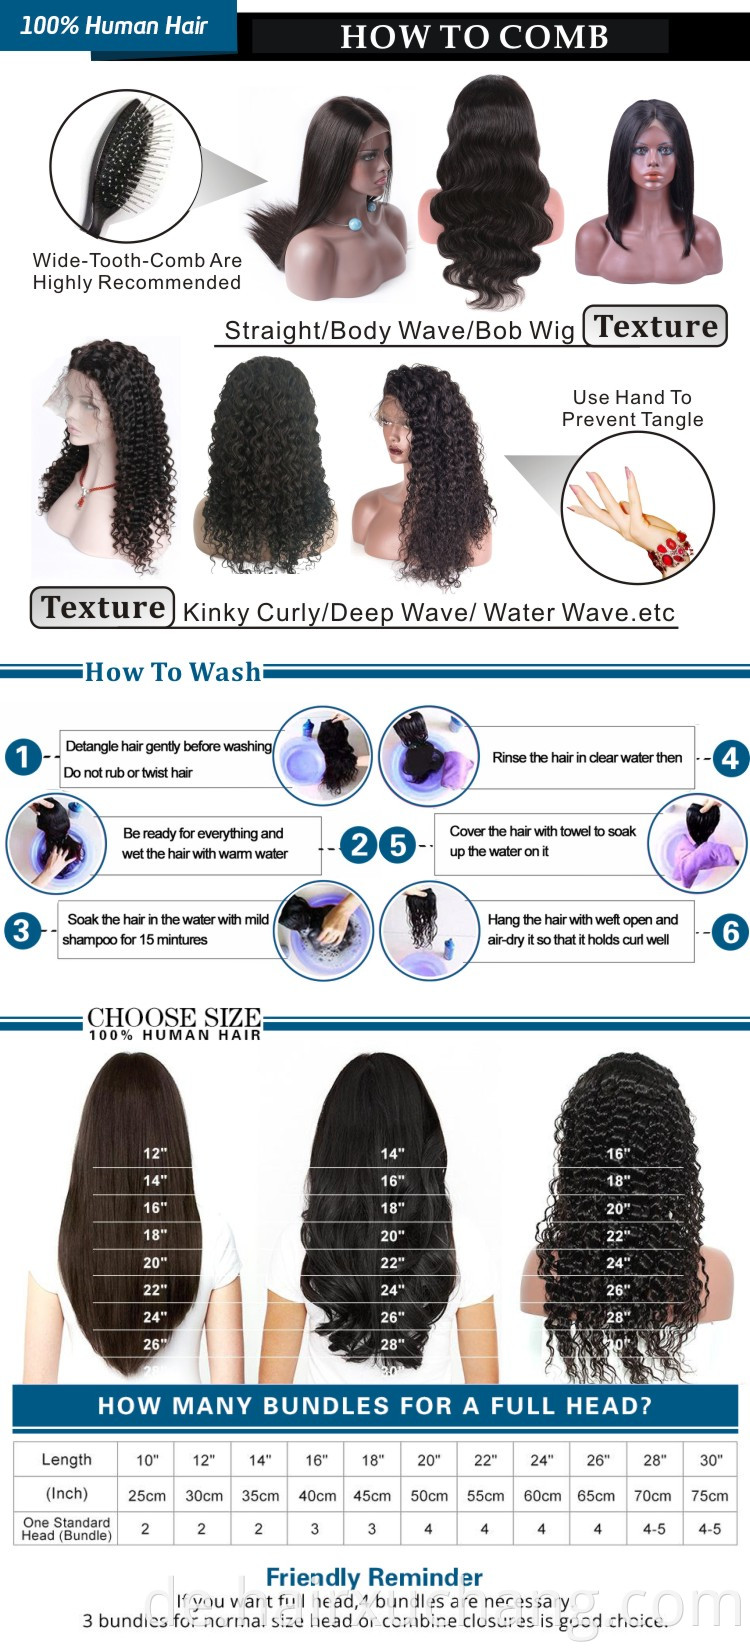 Heiß verkaufen 150 Densty Short Spitzenfront menschliches Haar Perücken Rohes indisches Haar Perücken menschliches Haar Straight Bob Perücken für schwarze Frauen